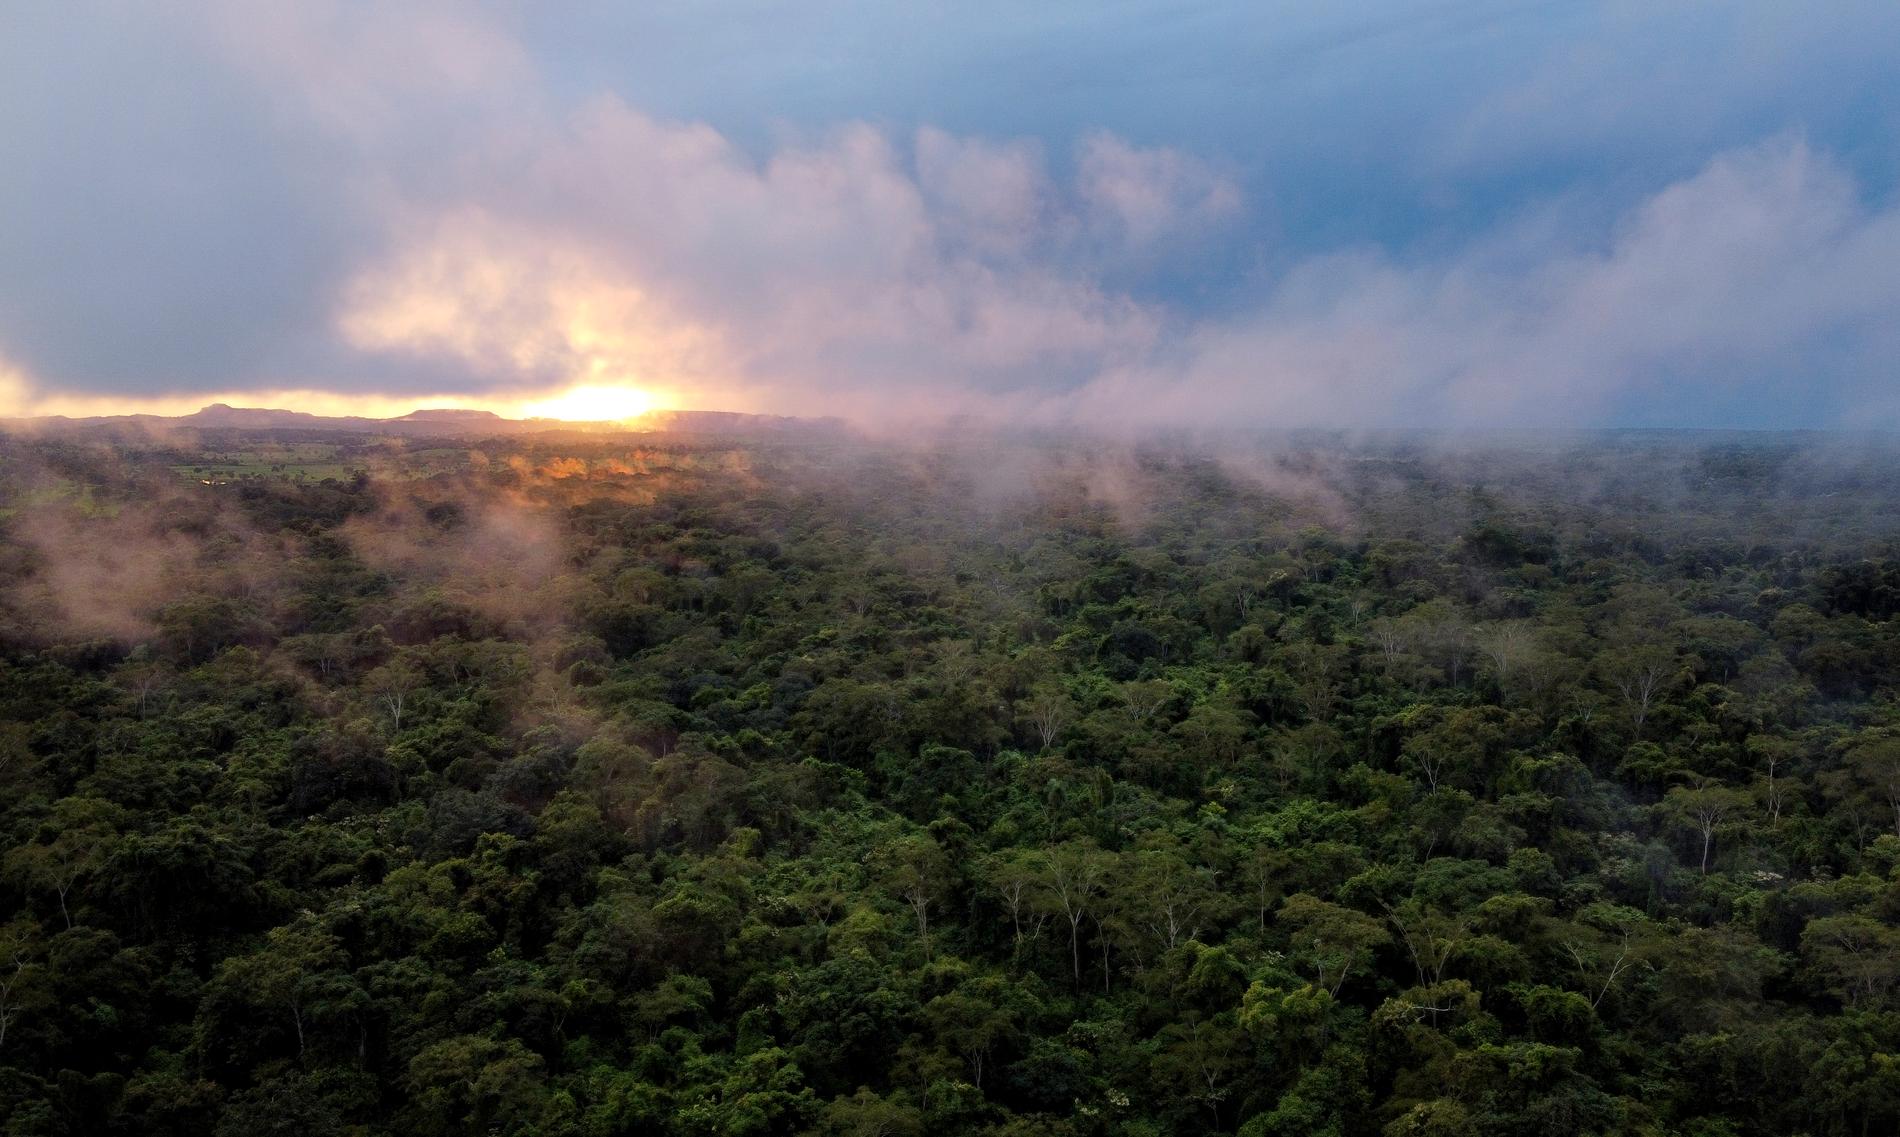 Att snabbt hejda nedhuggningen av jordens tropiska regnskogar är kritiskt både för att kunna bromsa förlusten av biologisk mångfald och för att klara klimatmålet om 1,5 grader.